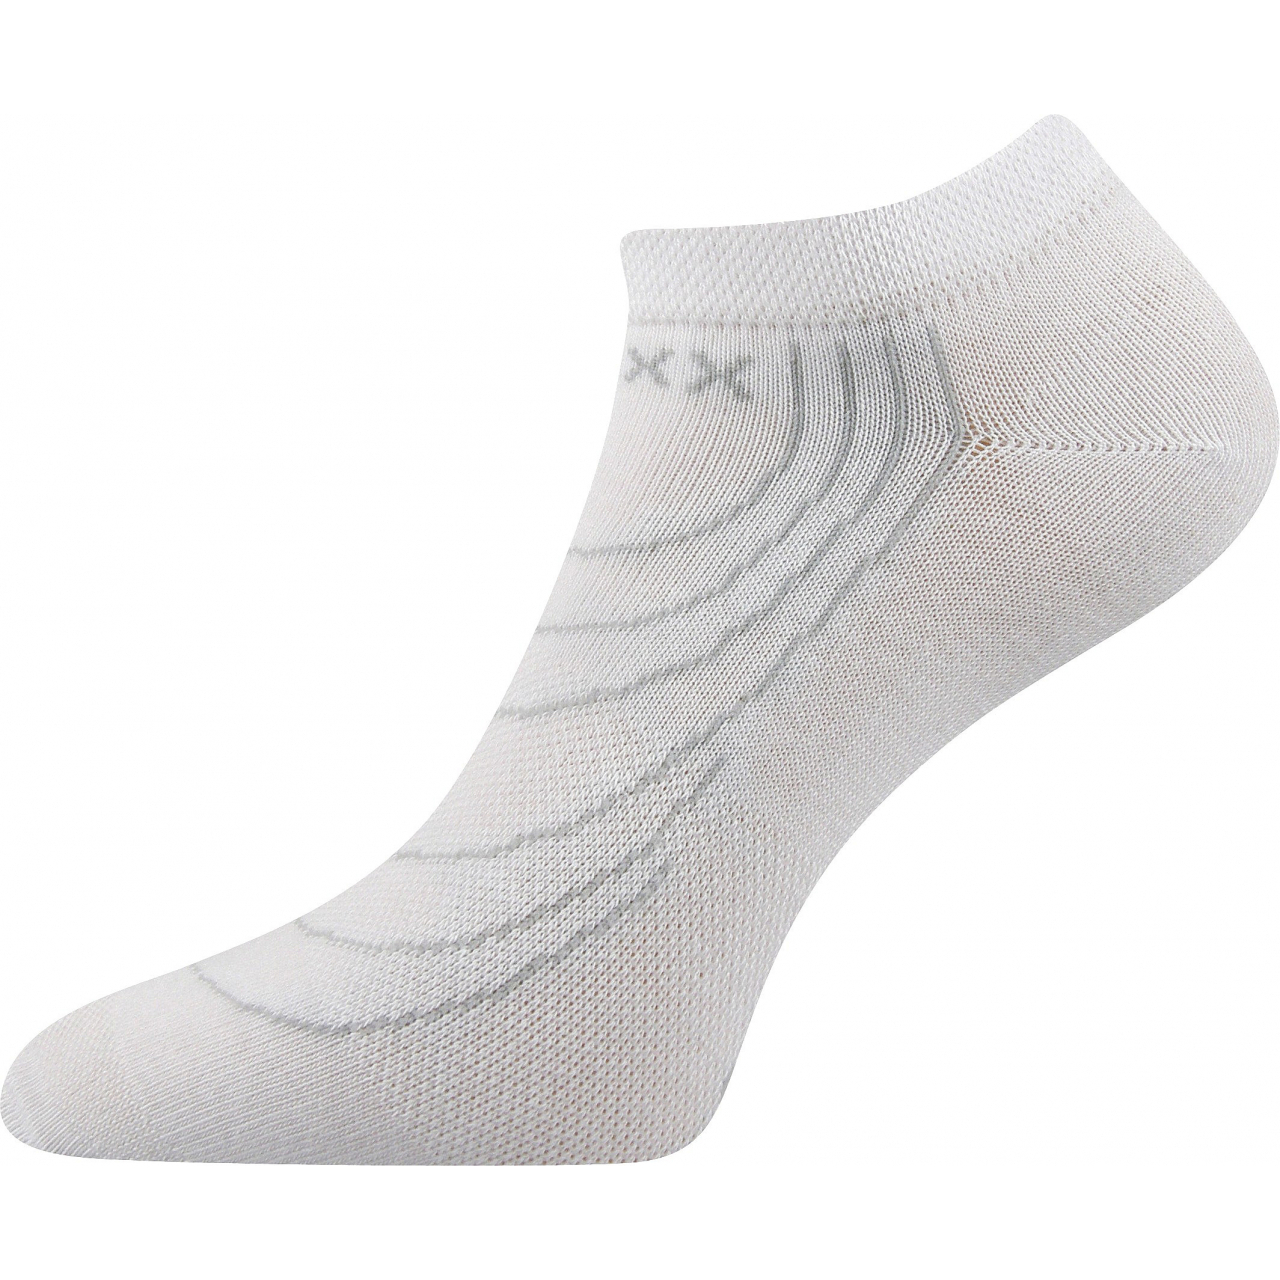 Ponožky nízké Voxx Rex - bílé, 35-38